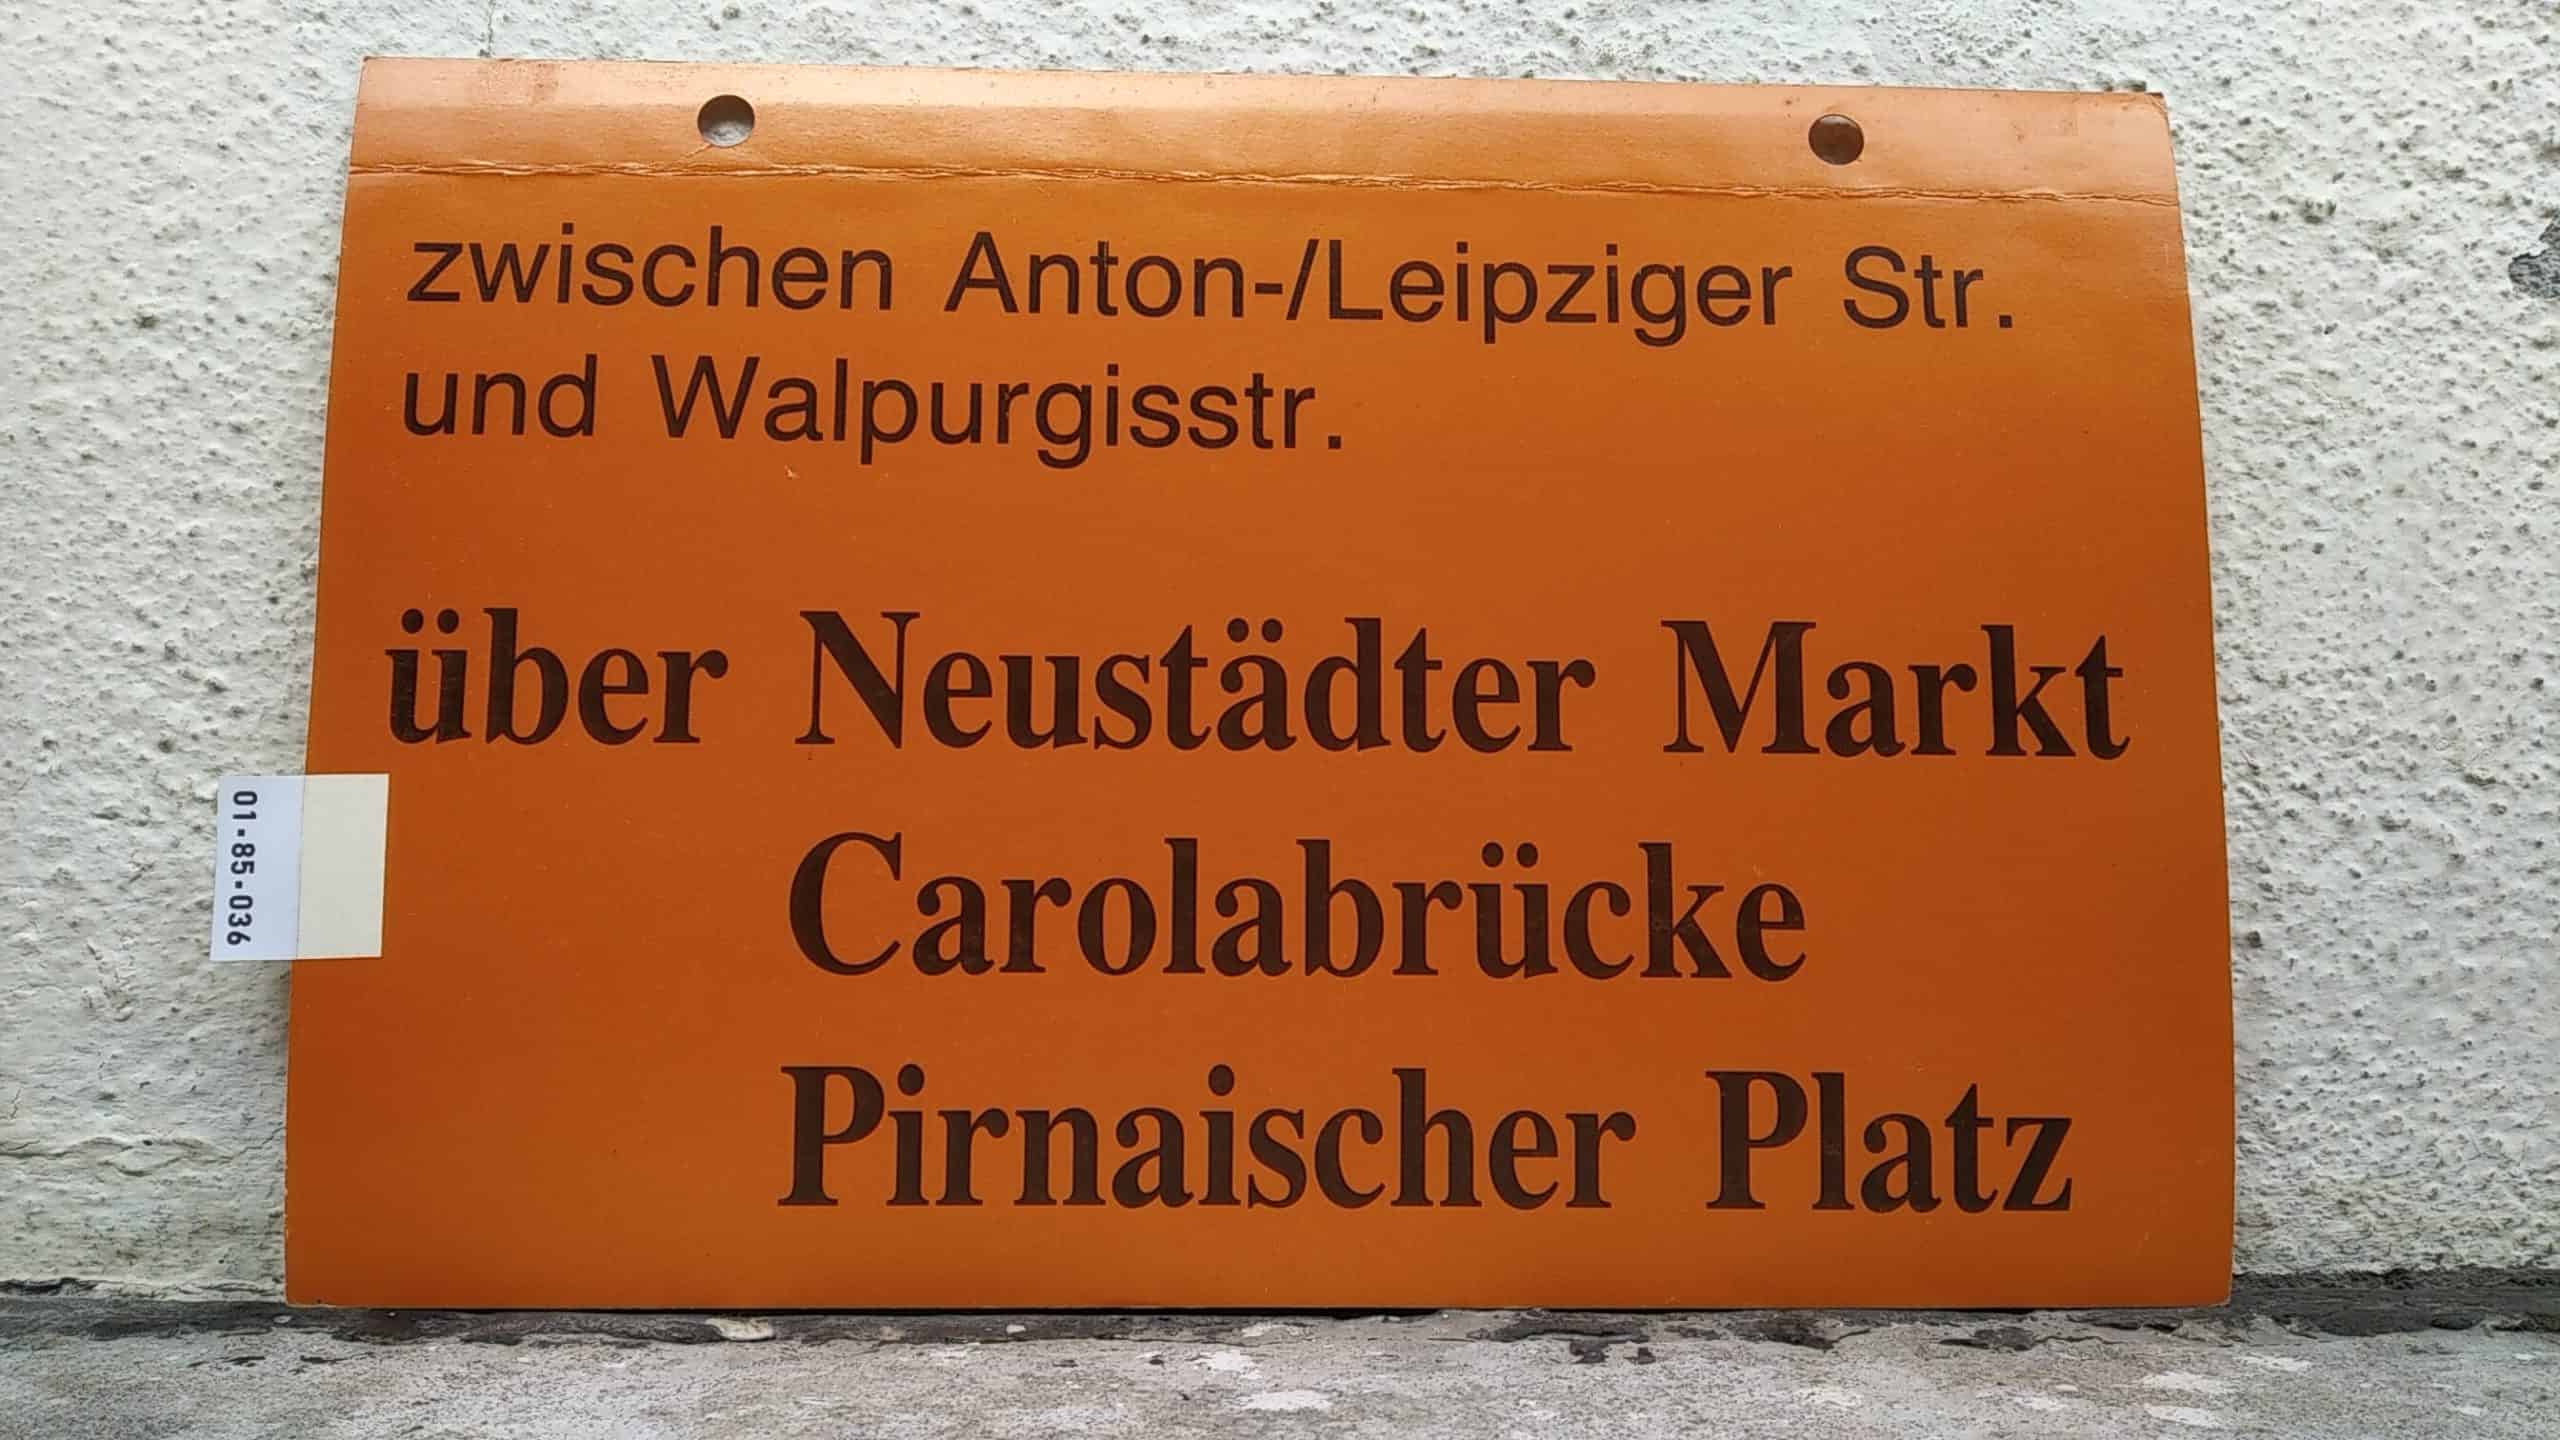 Ein seltenes Straßenbahn-Umleitungsschild aus Dresden: zwischen Anton-/Leipziger Str. und Walpurgisstr. über Neustädter Markt Carolabrücke Pirnaischer Platz